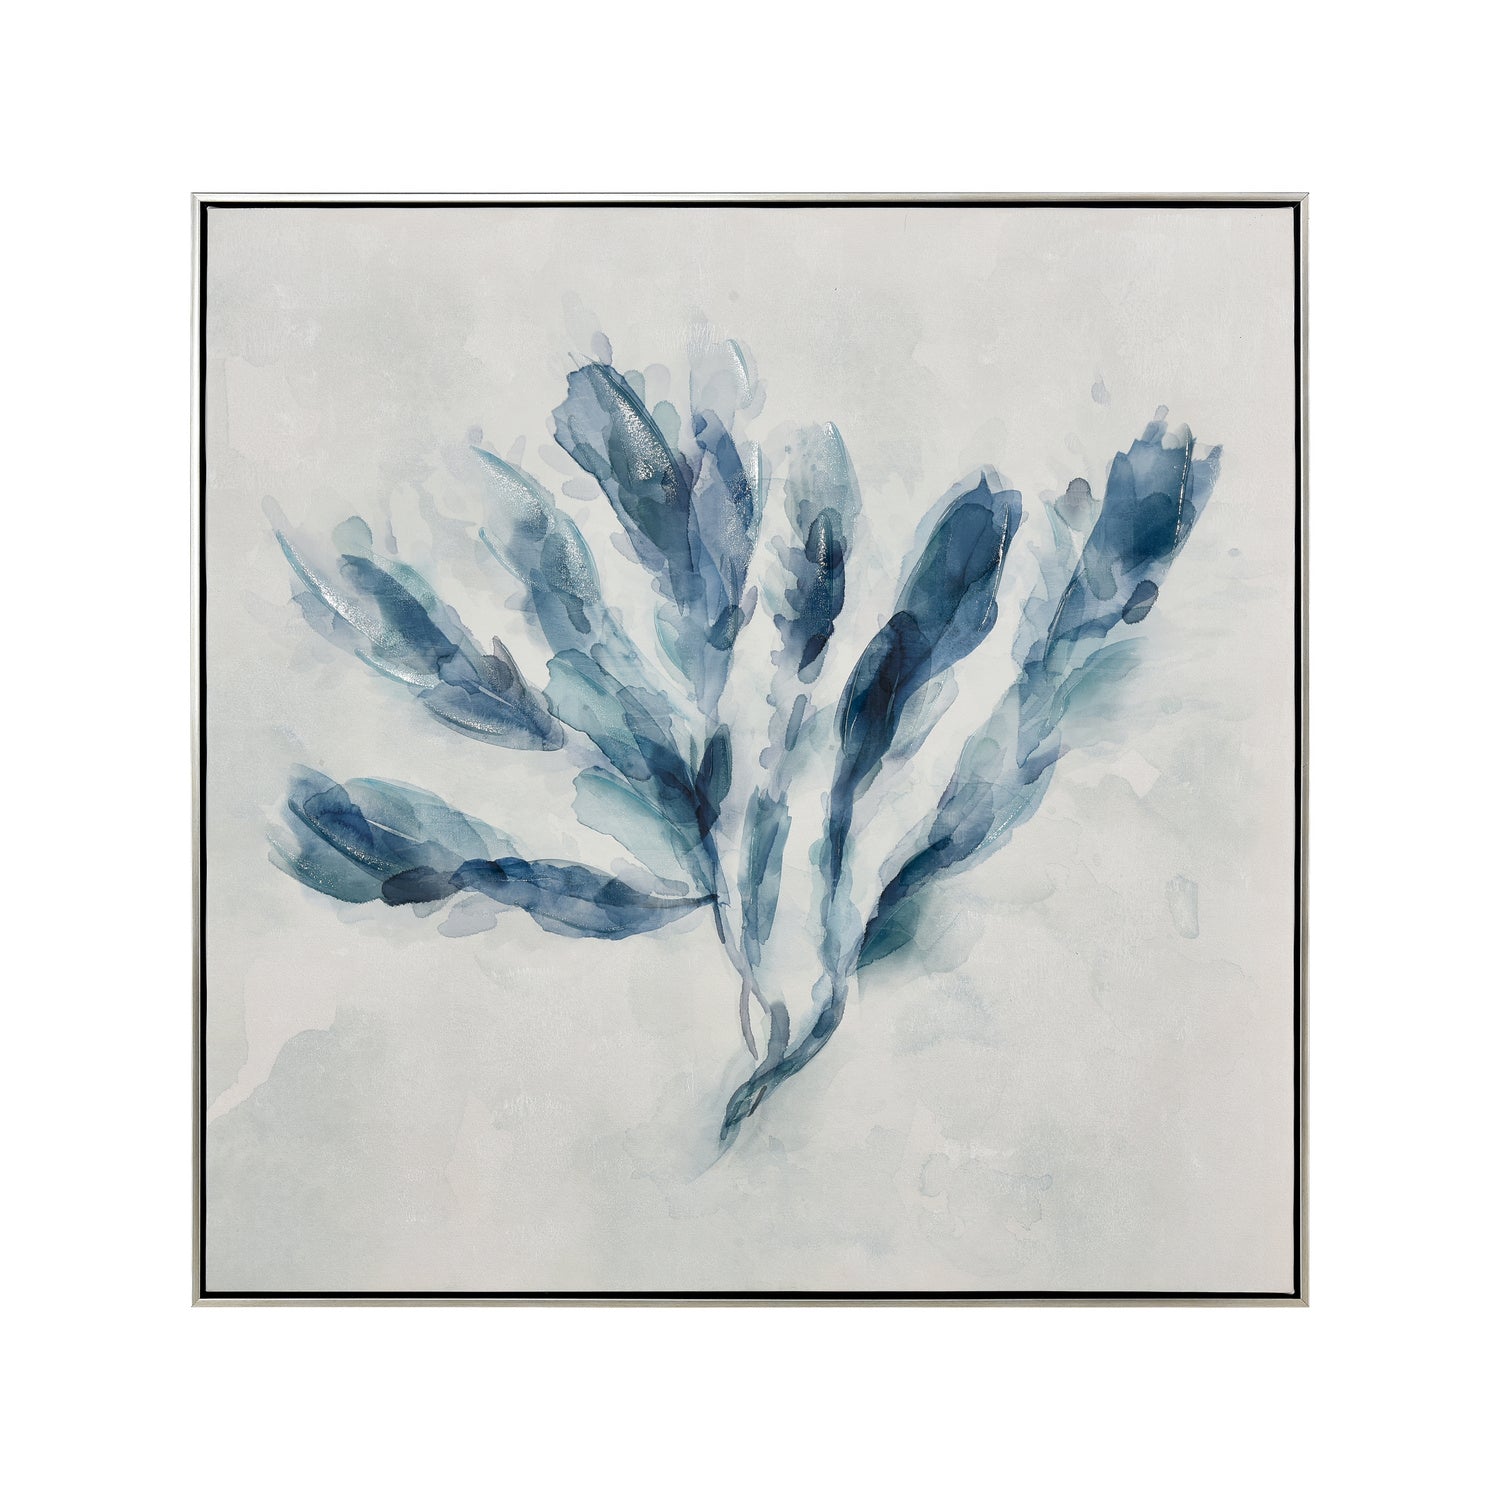 ELK Home - S0016-10179 - Framed Wall Art - Blue Seagrass - White